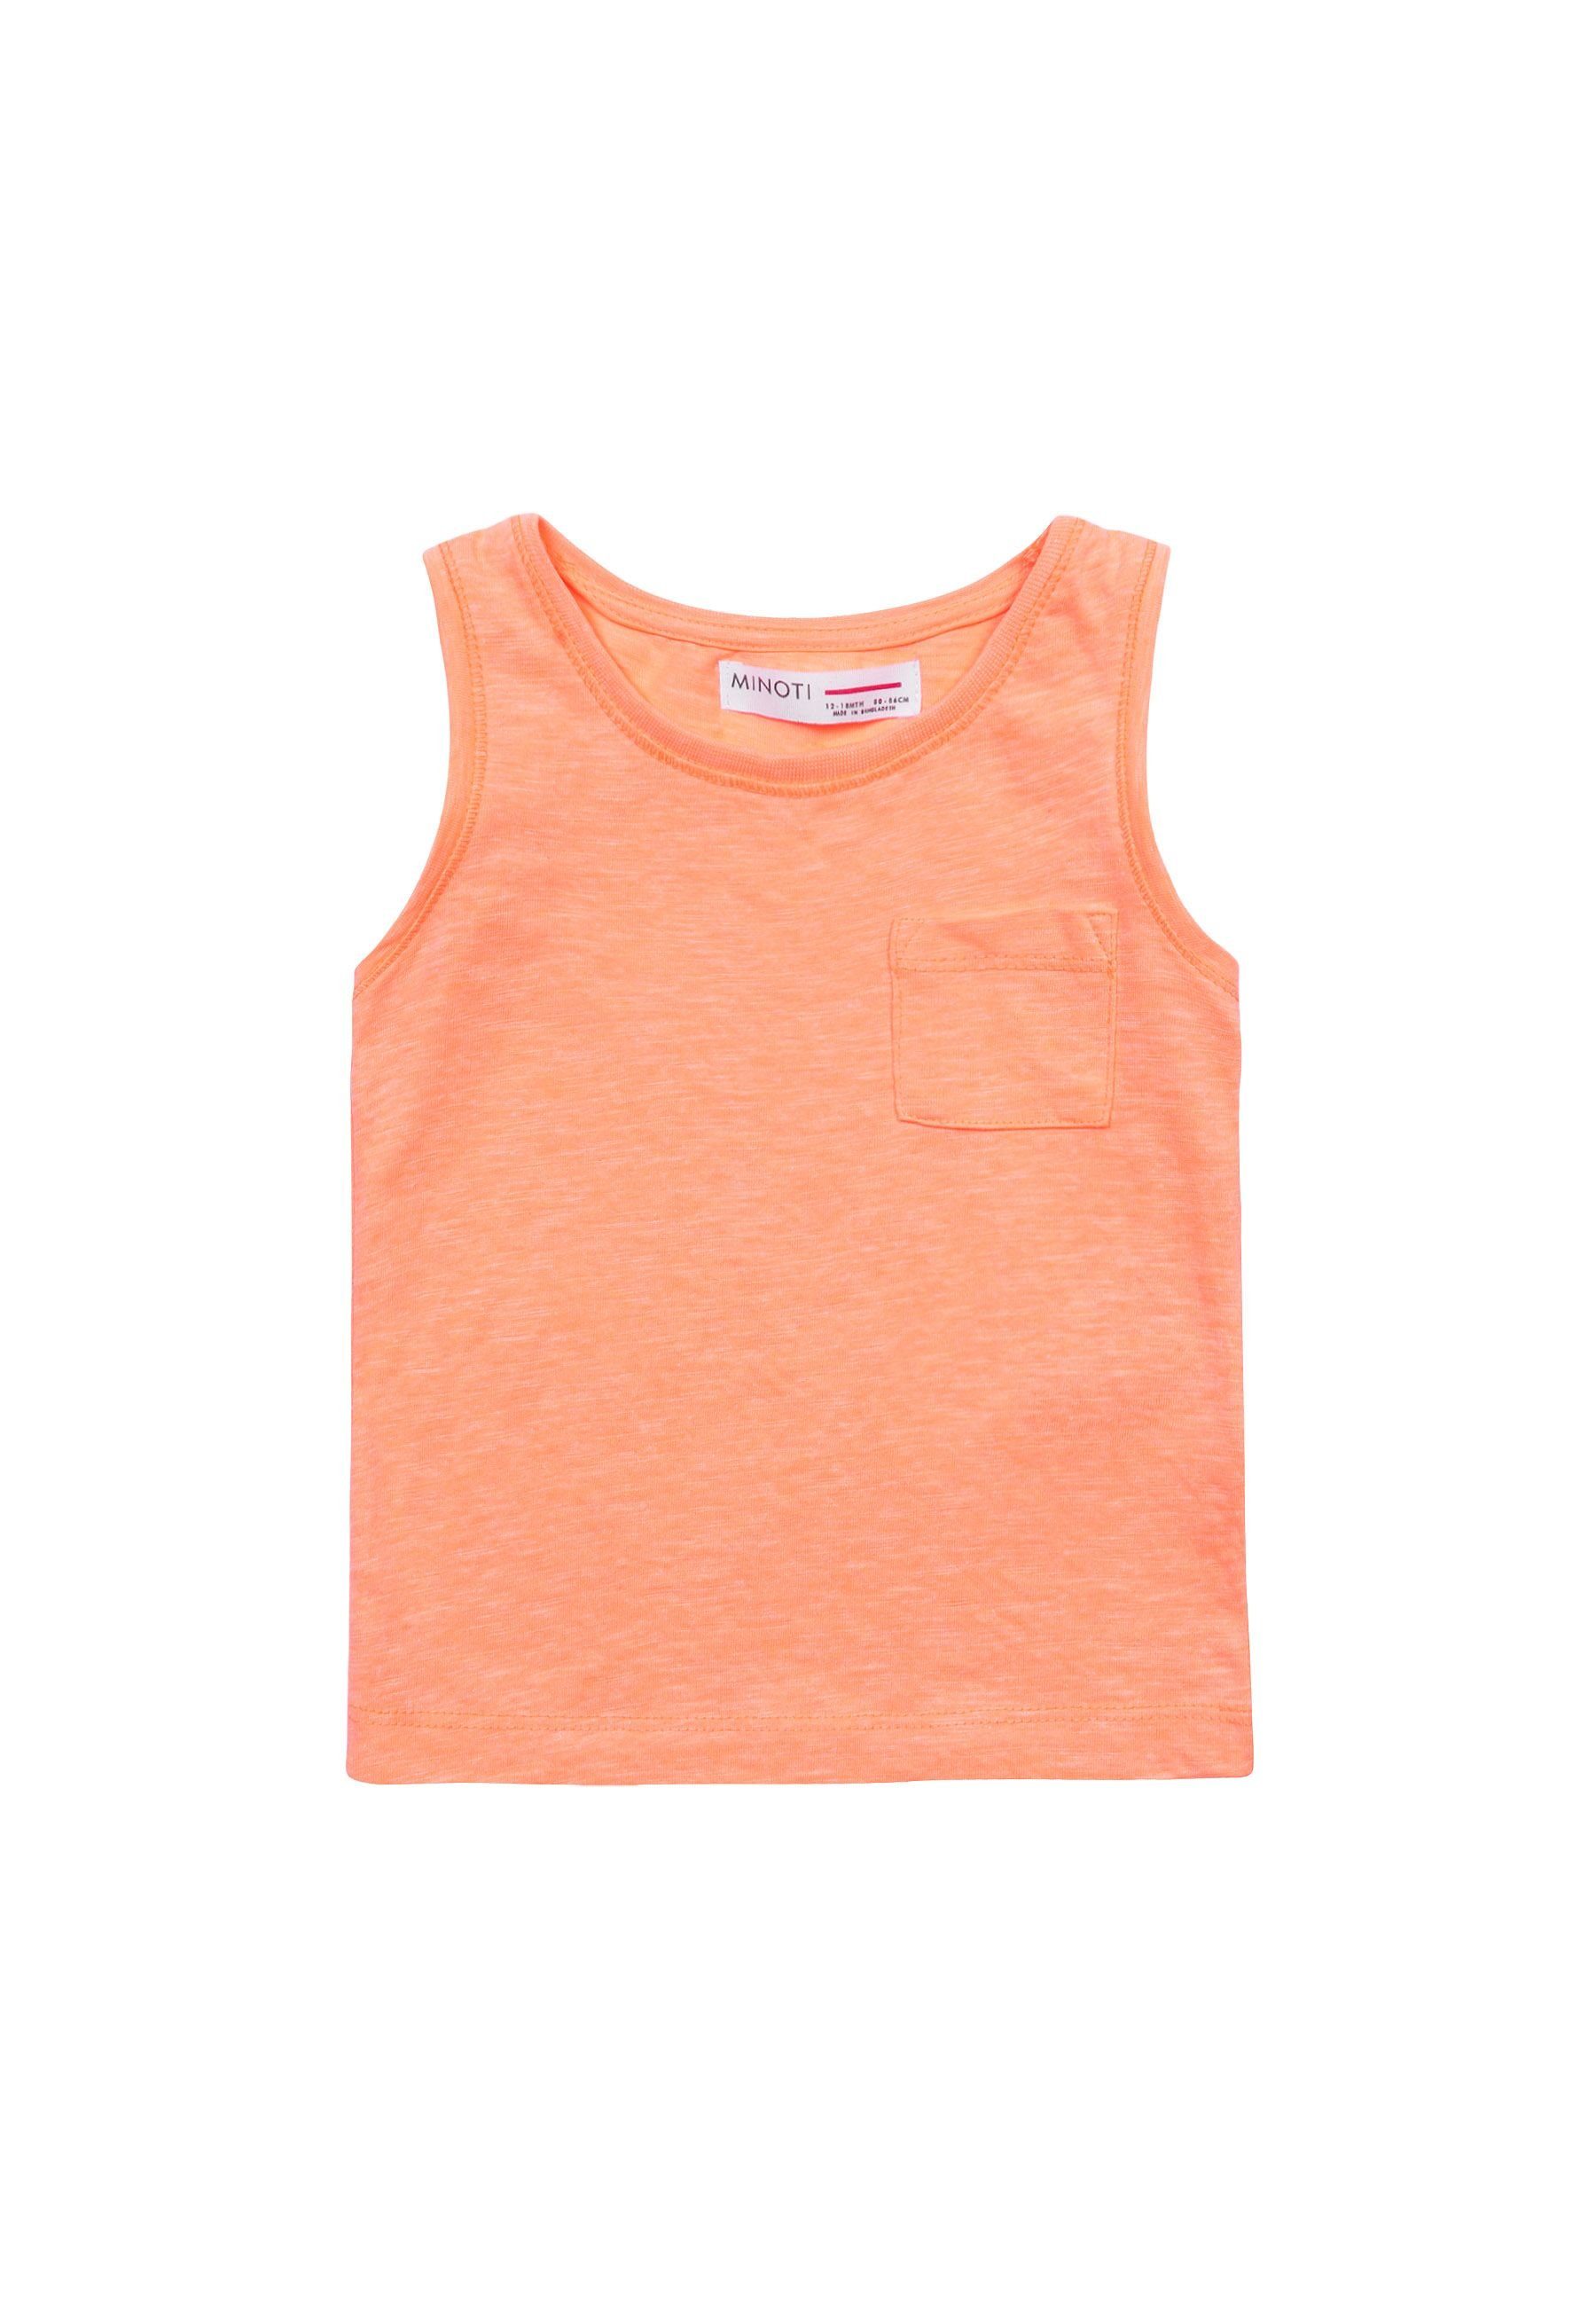 MINOTI T-Shirt Weste mit Tasche Orange (1y-14y)